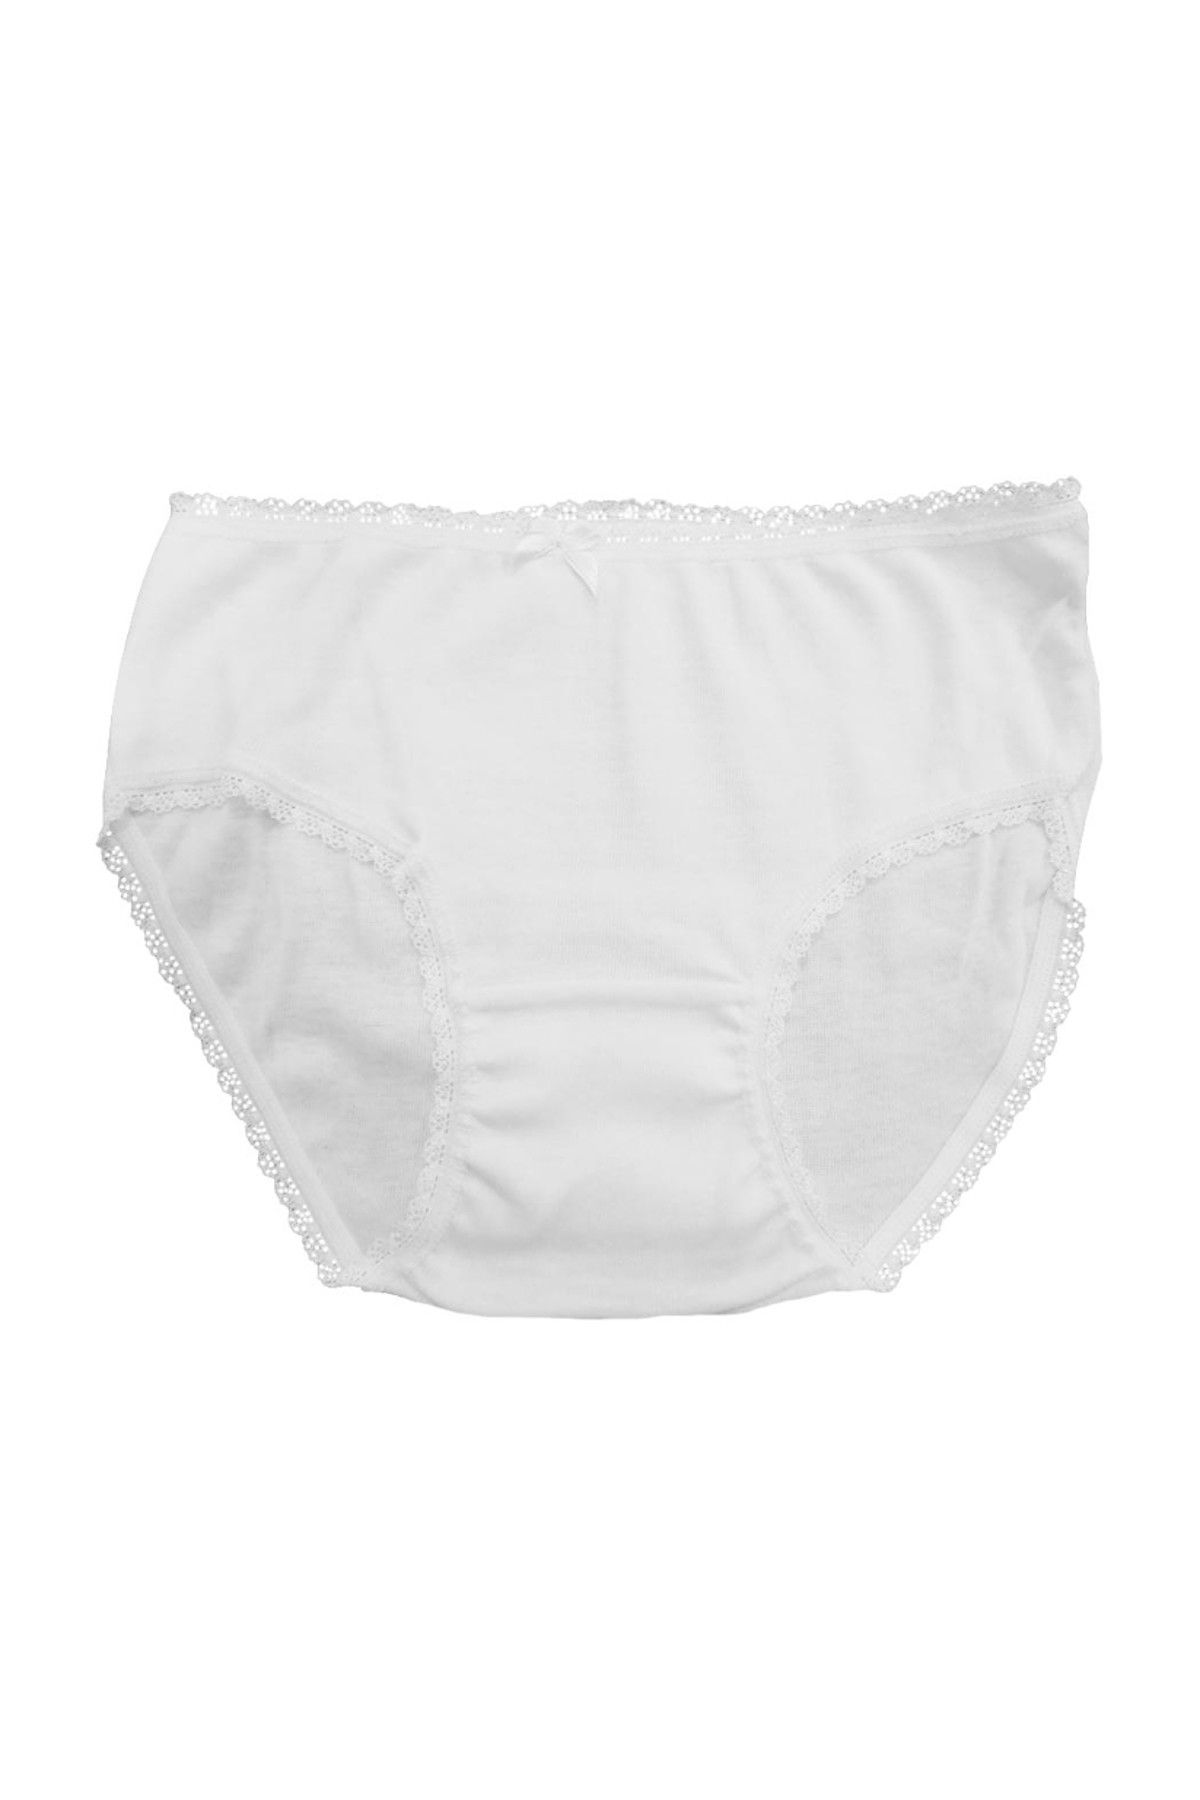 ÖZKAN underwear 1681 Kız Çocuk Külot